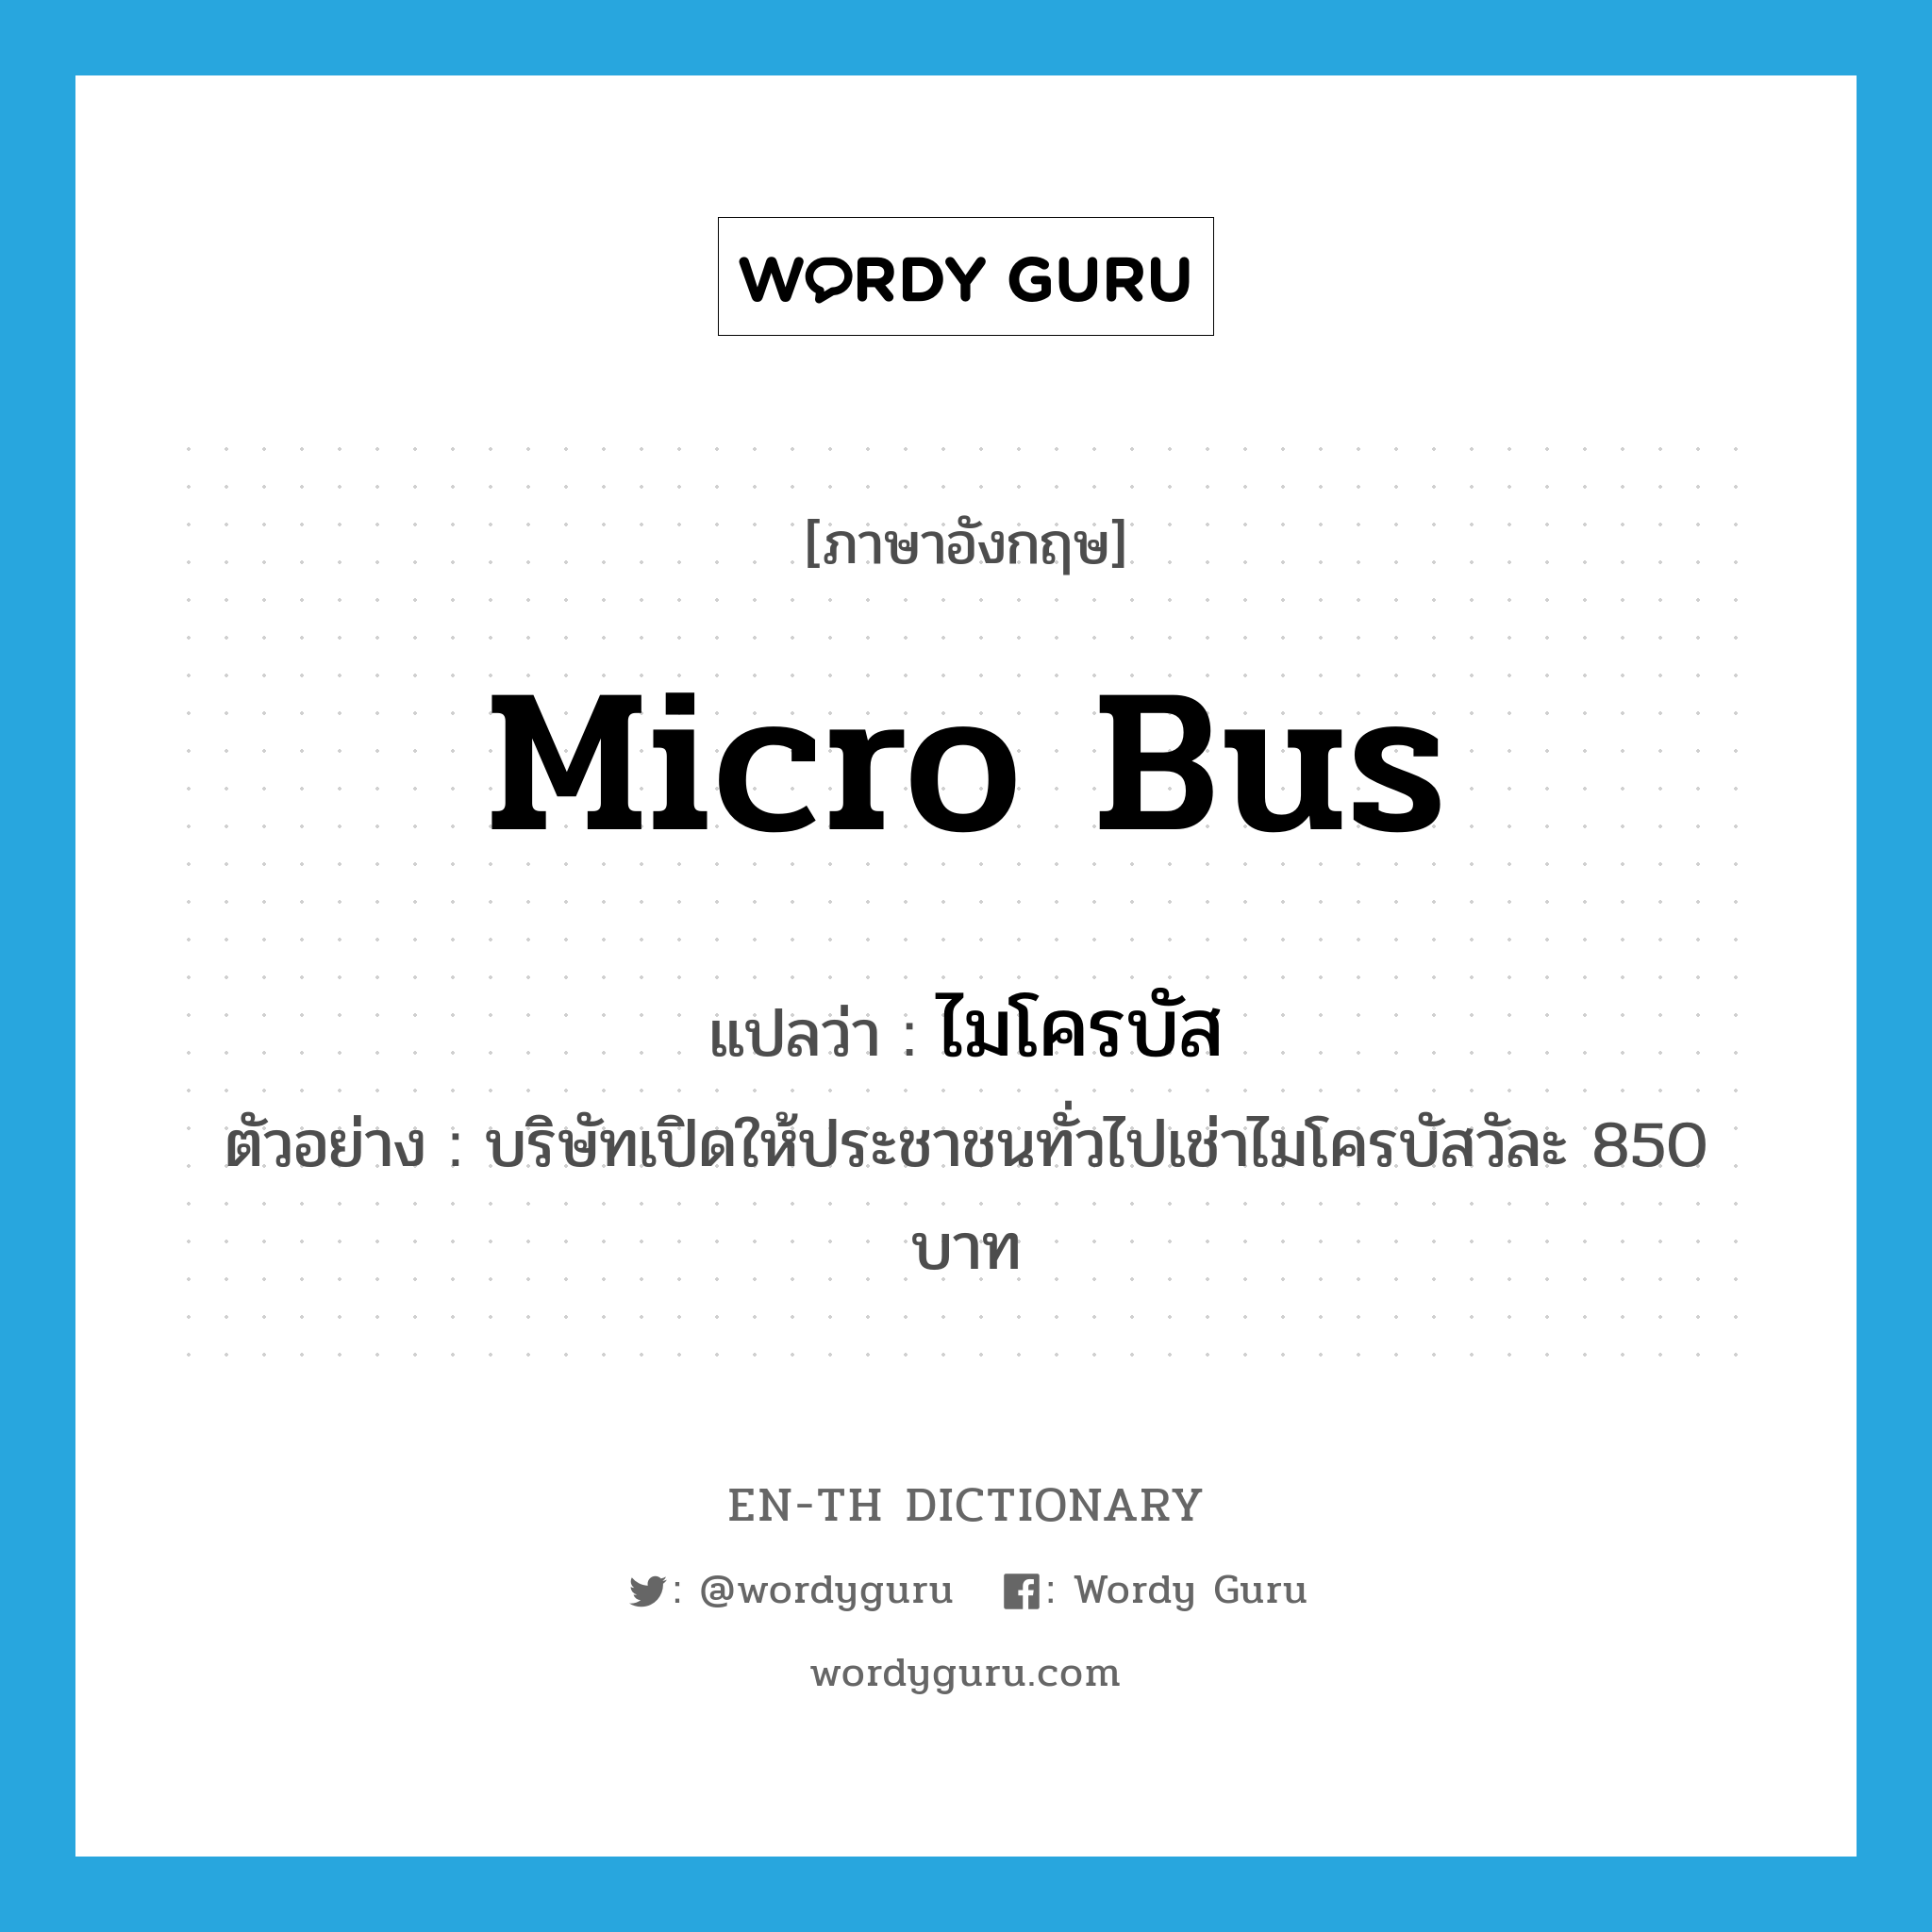 micro bus แปลว่า?, คำศัพท์ภาษาอังกฤษ micro bus แปลว่า ไมโครบัส ประเภท N ตัวอย่าง บริษัทเปิดให้ประชาชนทั่วไปเช่าไมโครบัสวัละ 850 บาท หมวด N